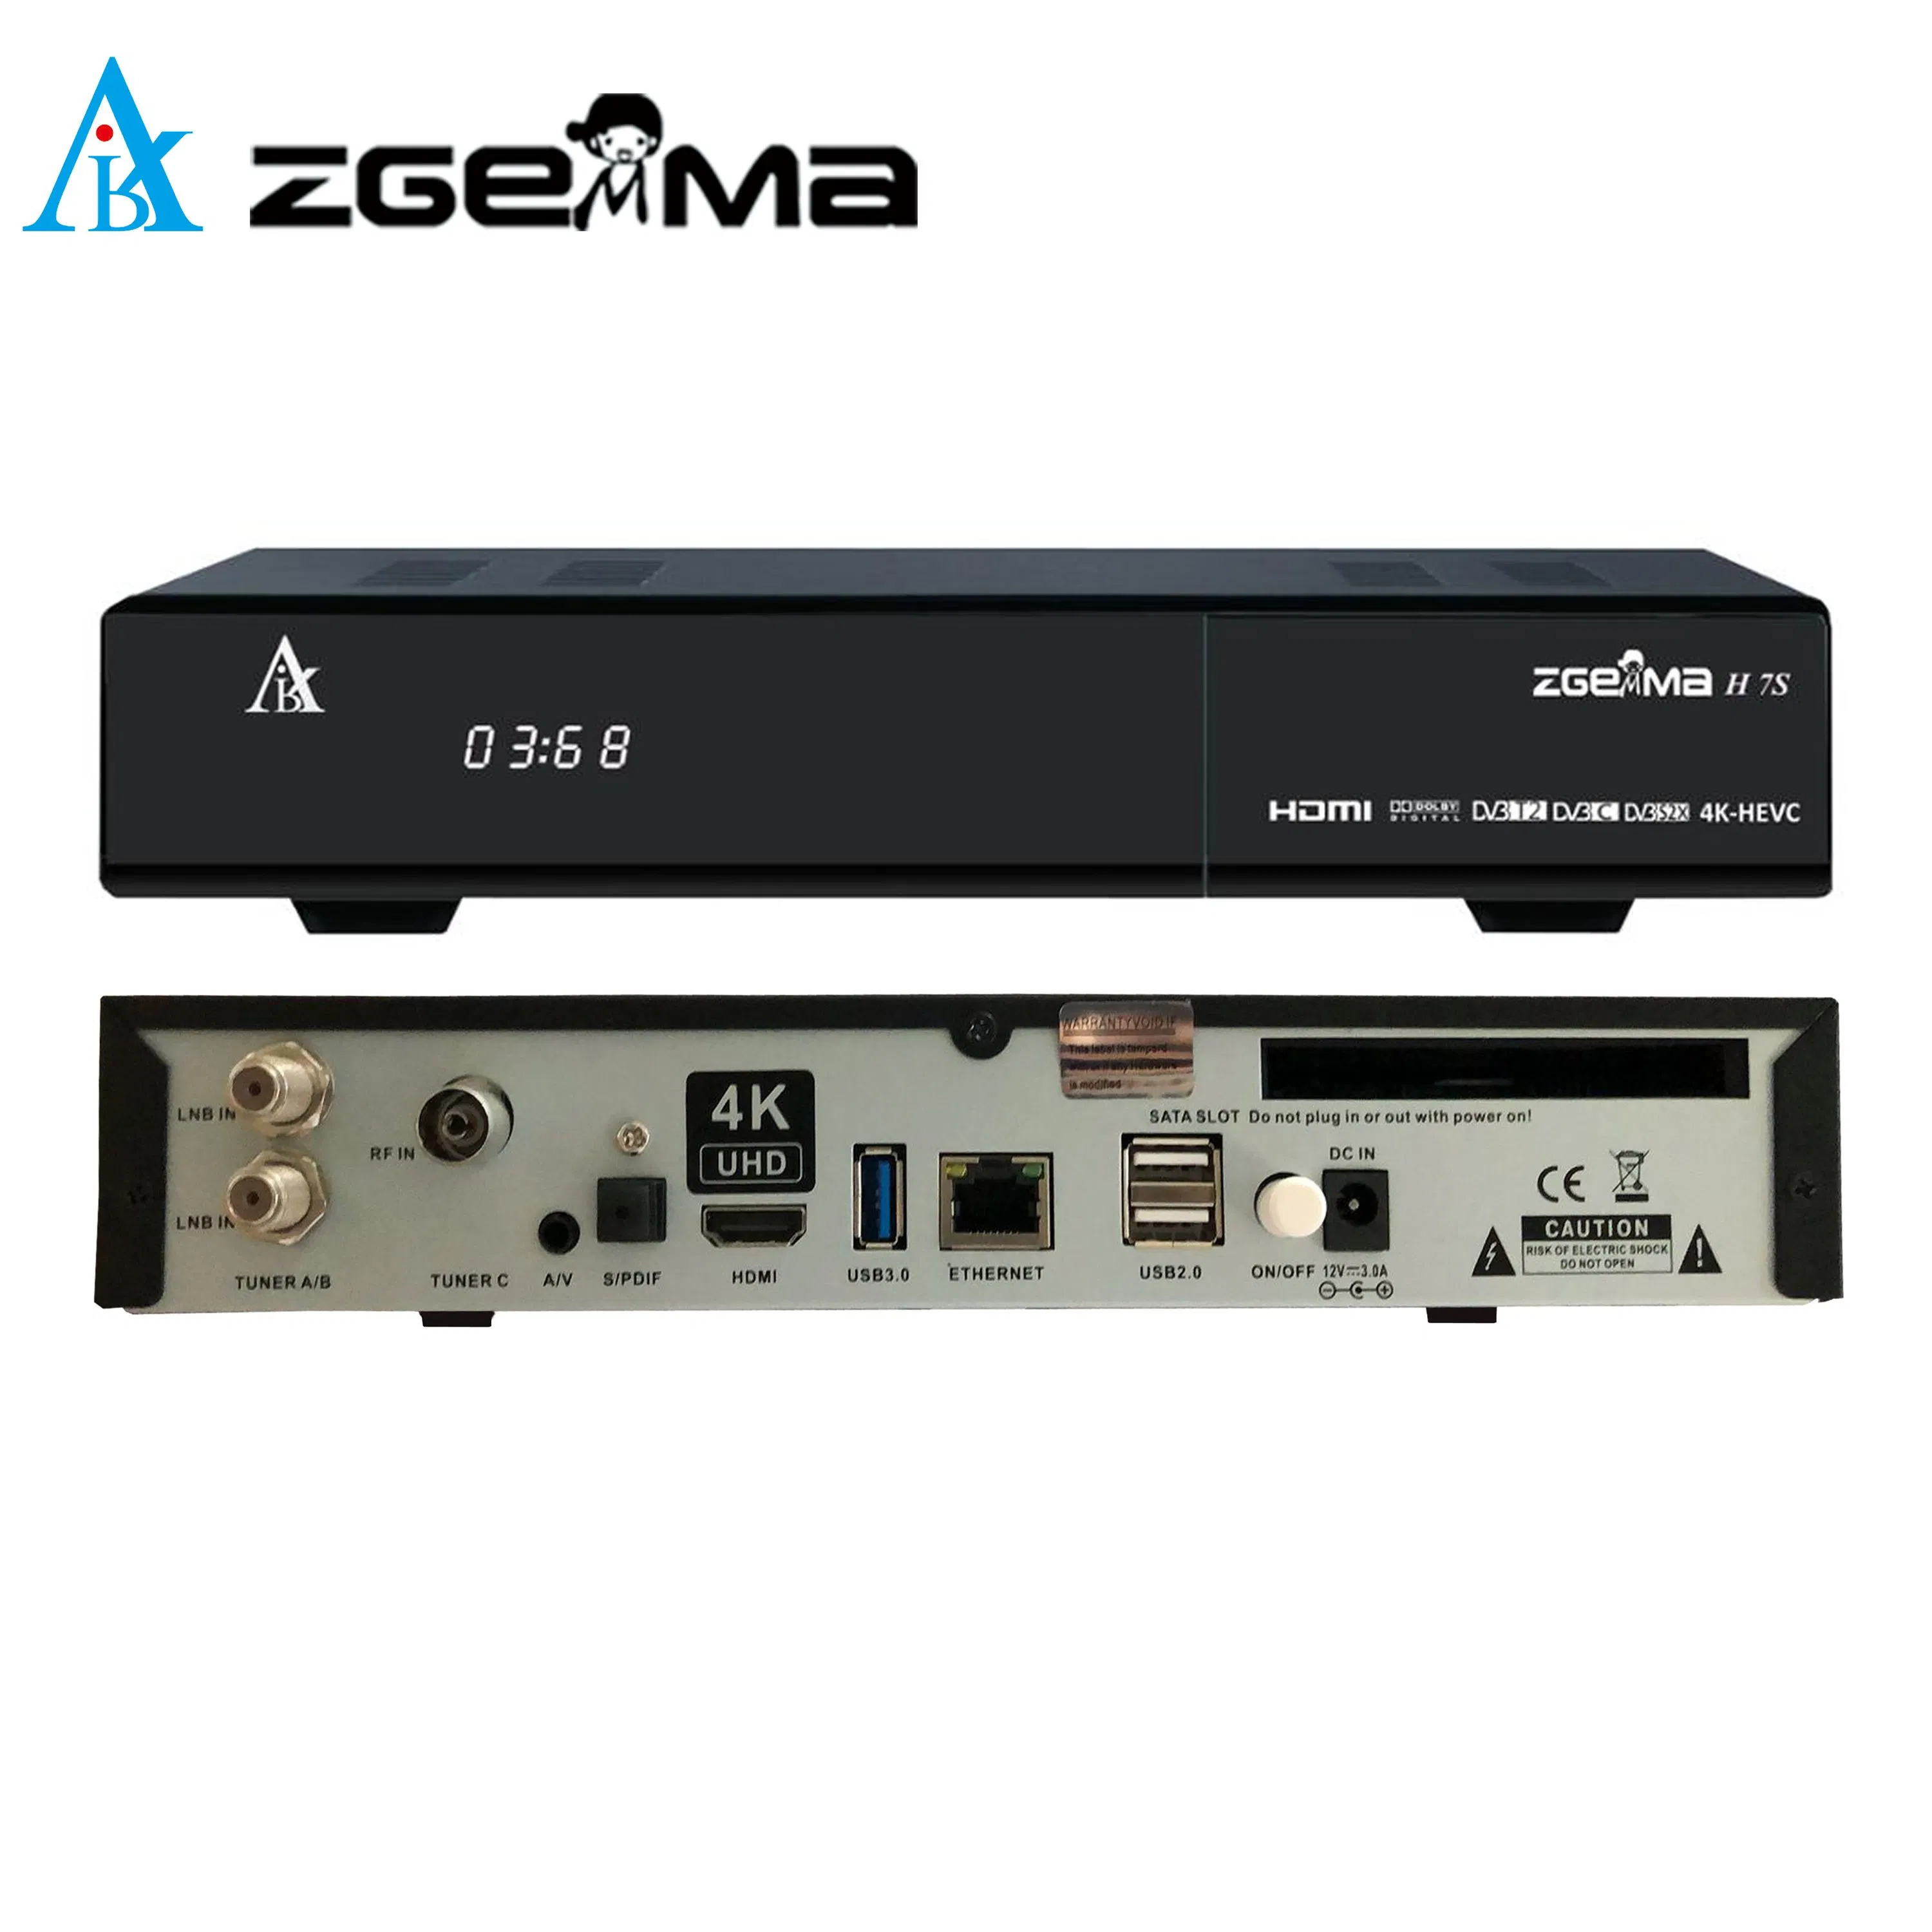 Erweitern Sie Ihre TV-Unterhaltung mit Zgemma H7s - 16GB eMMC Flash, 1GB DDR3 Speicher Satelliten TV Receiver